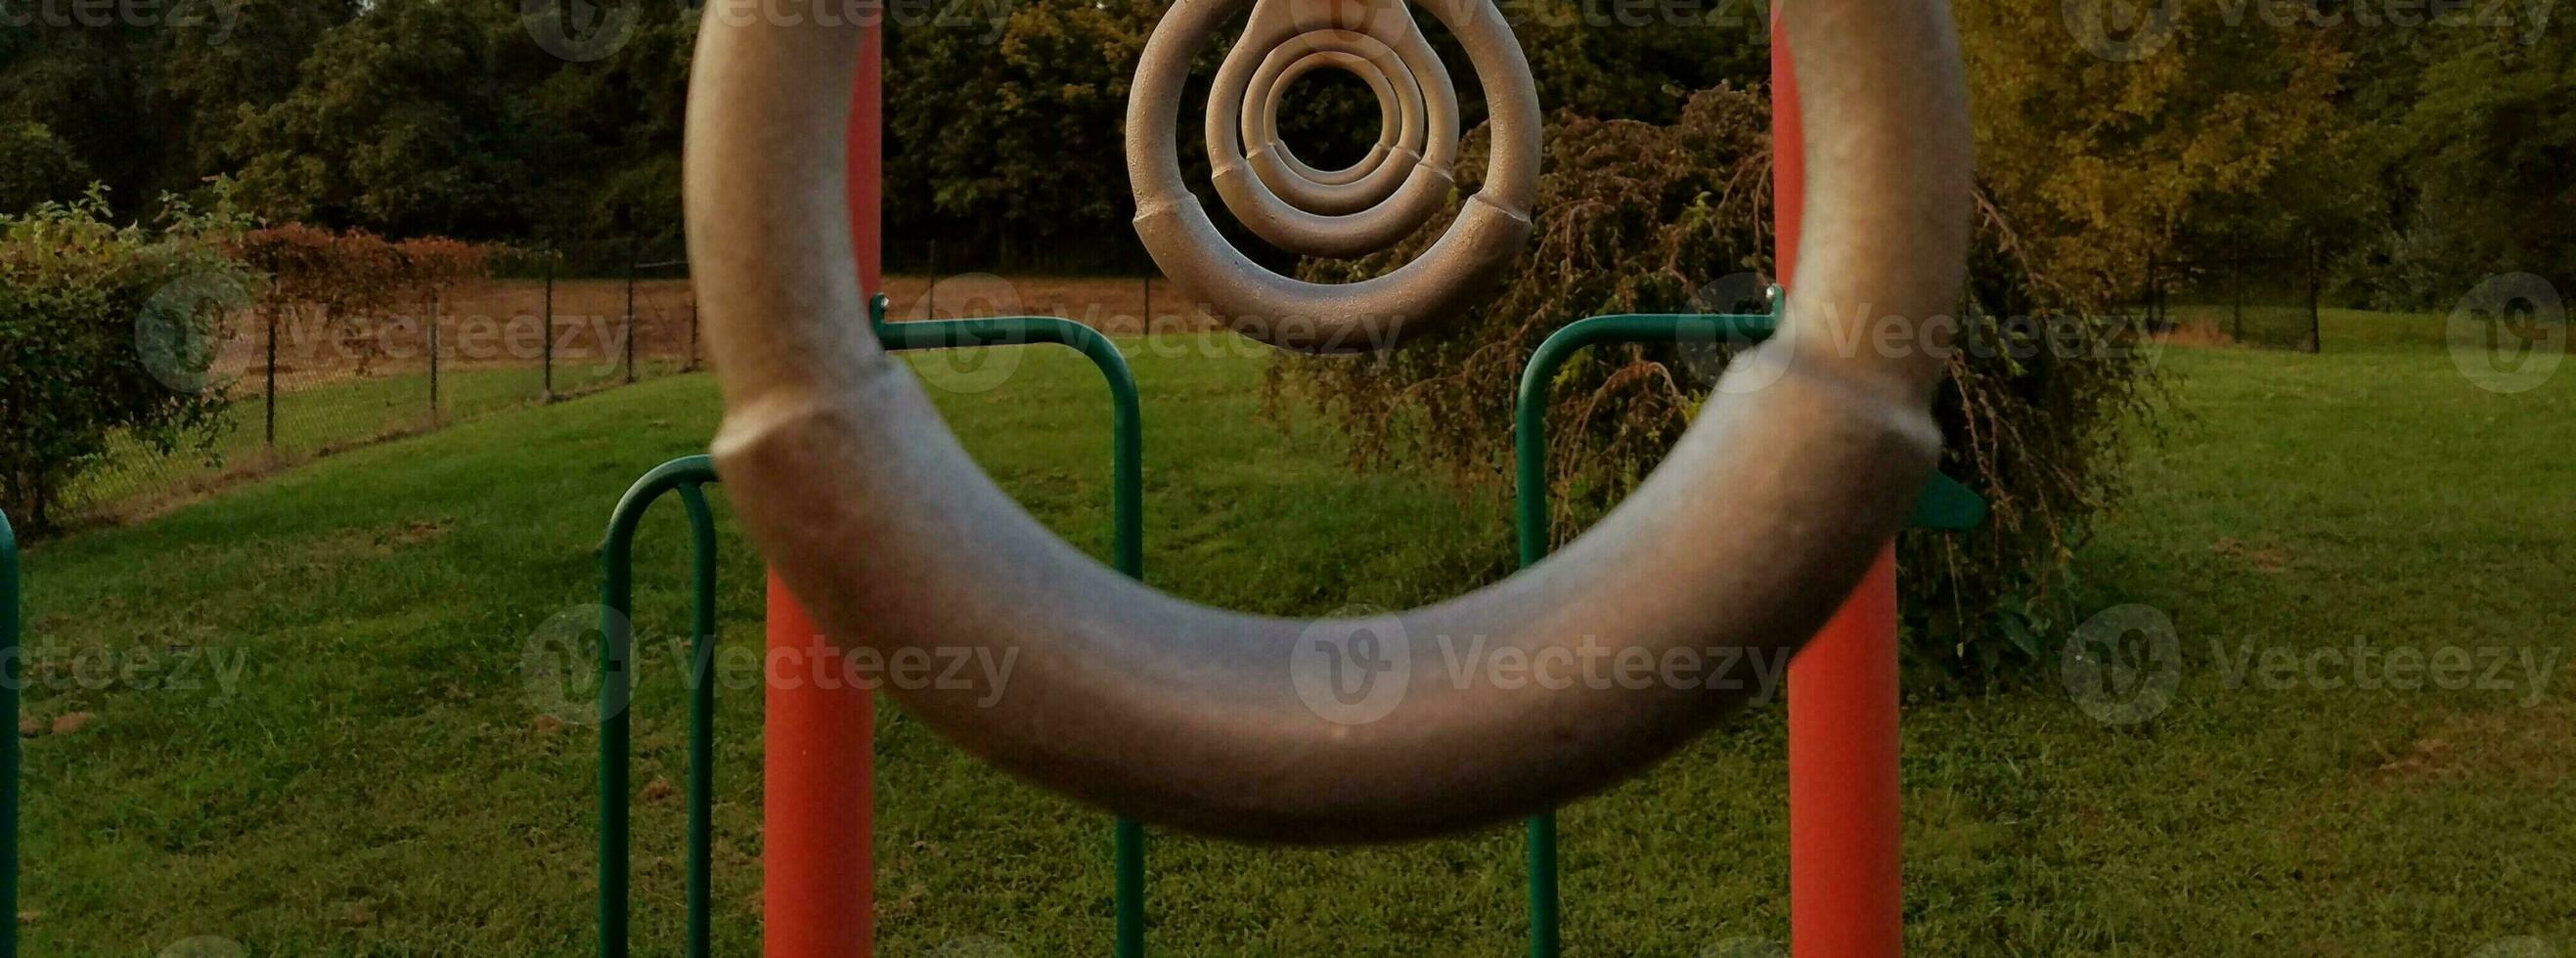 anéis de metal em um playground foto